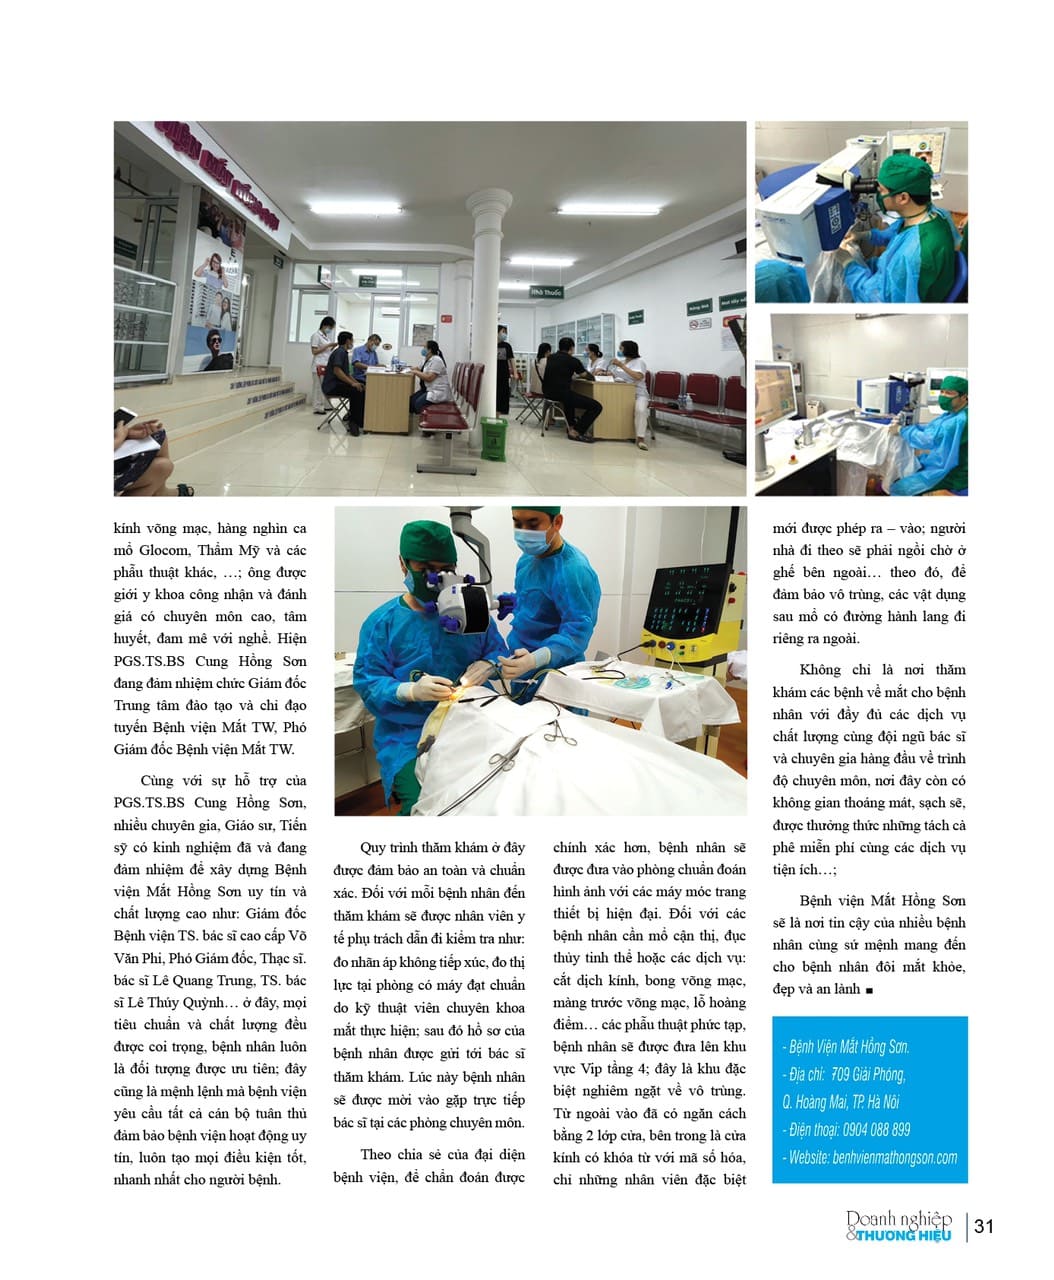 Tạp chí Doanh nghiệp và Thương hiệu nói về Bệnh viện Mắt Hồng Sơn